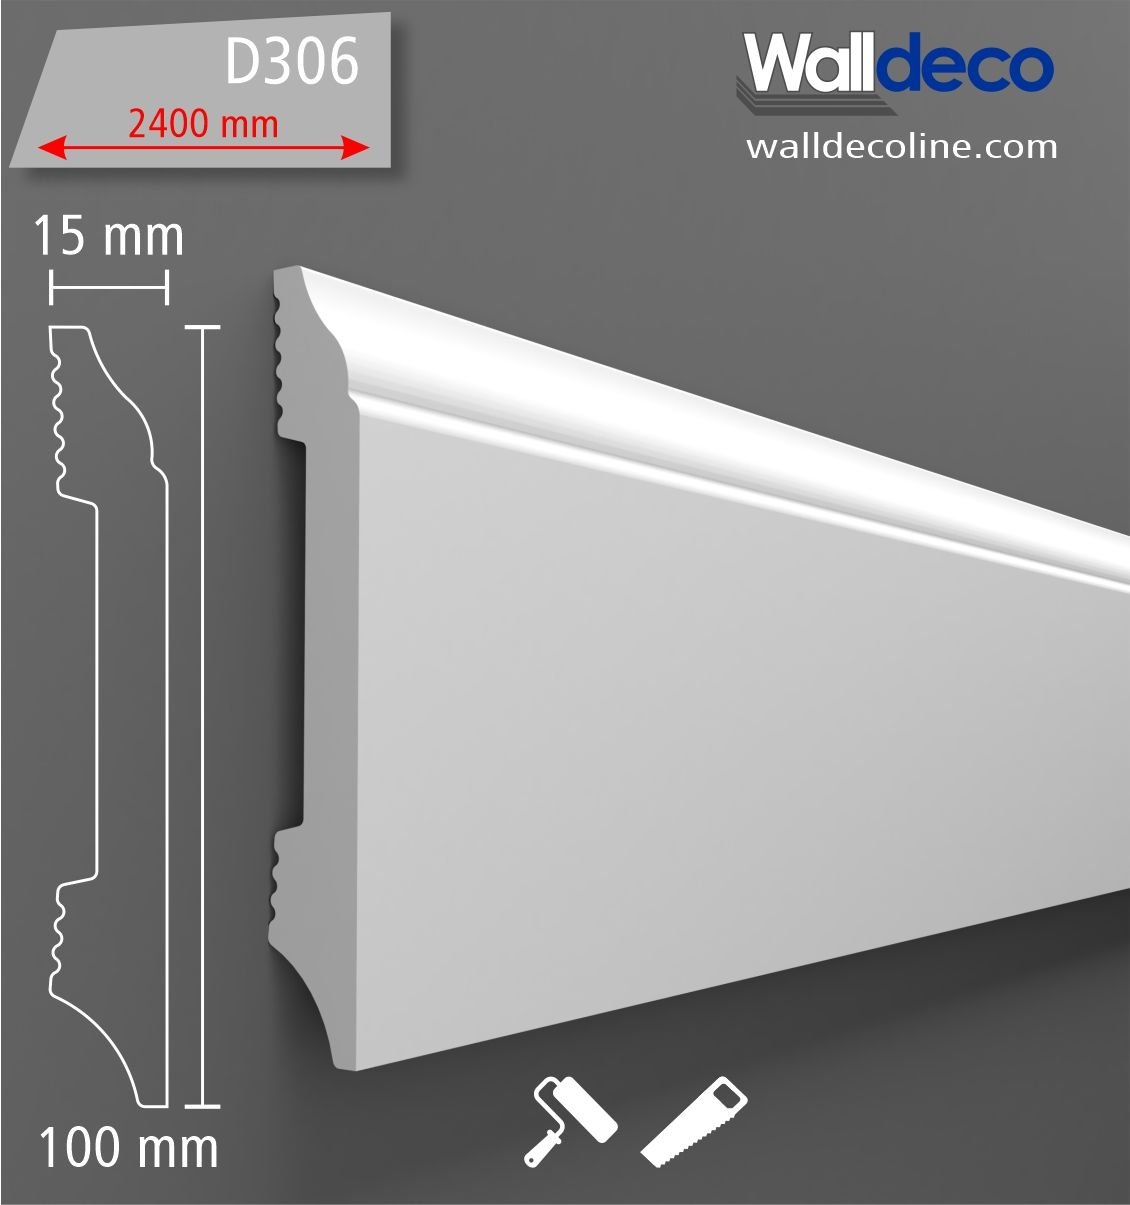 Walldeco Boyanabilir Sert Dekoratif Süpürgelik D-306 - (5 Boy- 12 metre)